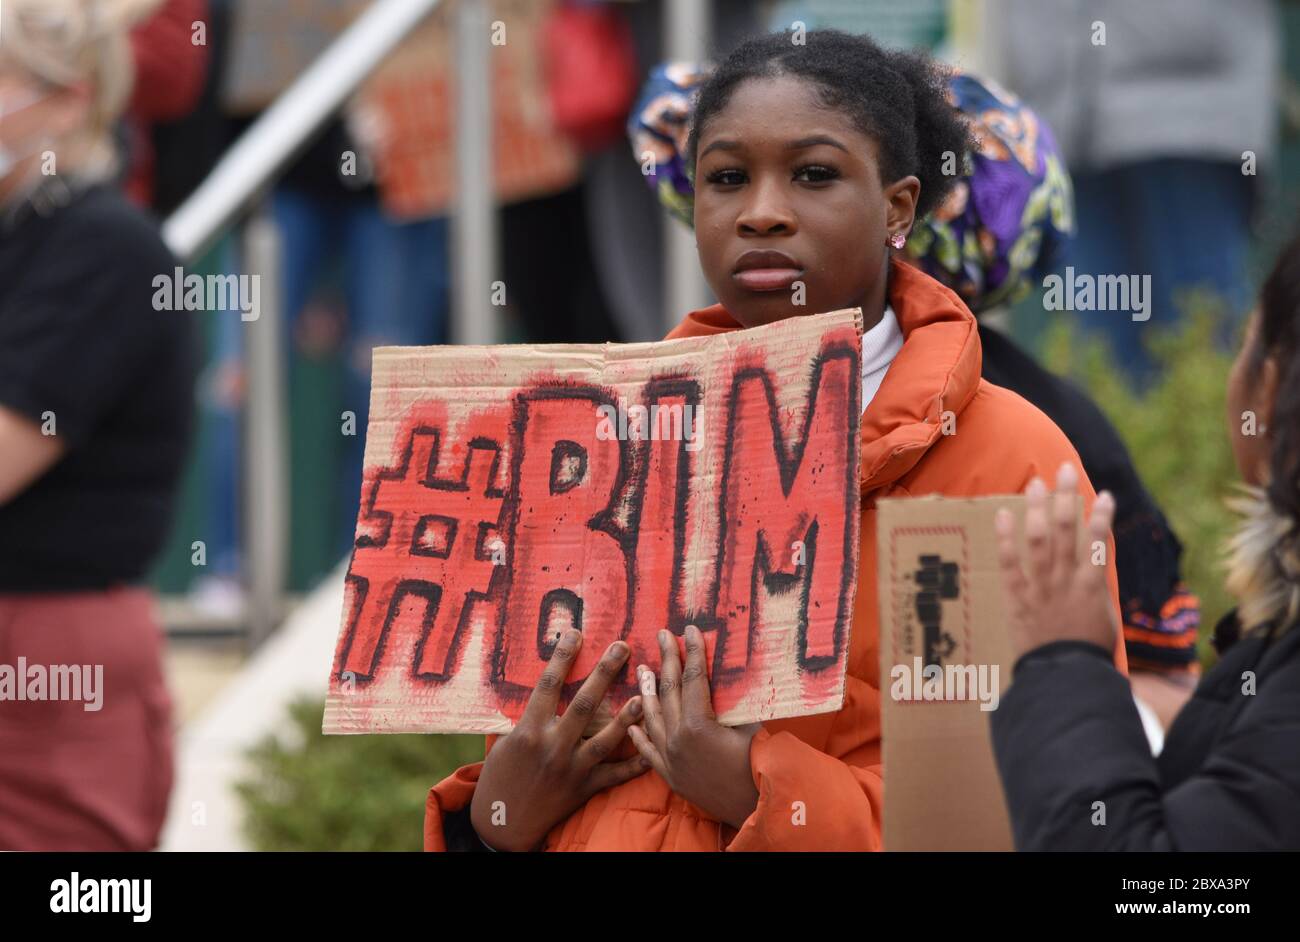 Una giovane donna nera britannica che protestava contro un raduno anti-razzismo Black Lives Matter nel Regno Unito a seguito dell'uccisione illegale di George Floyd negli Stati Uniti Foto Stock